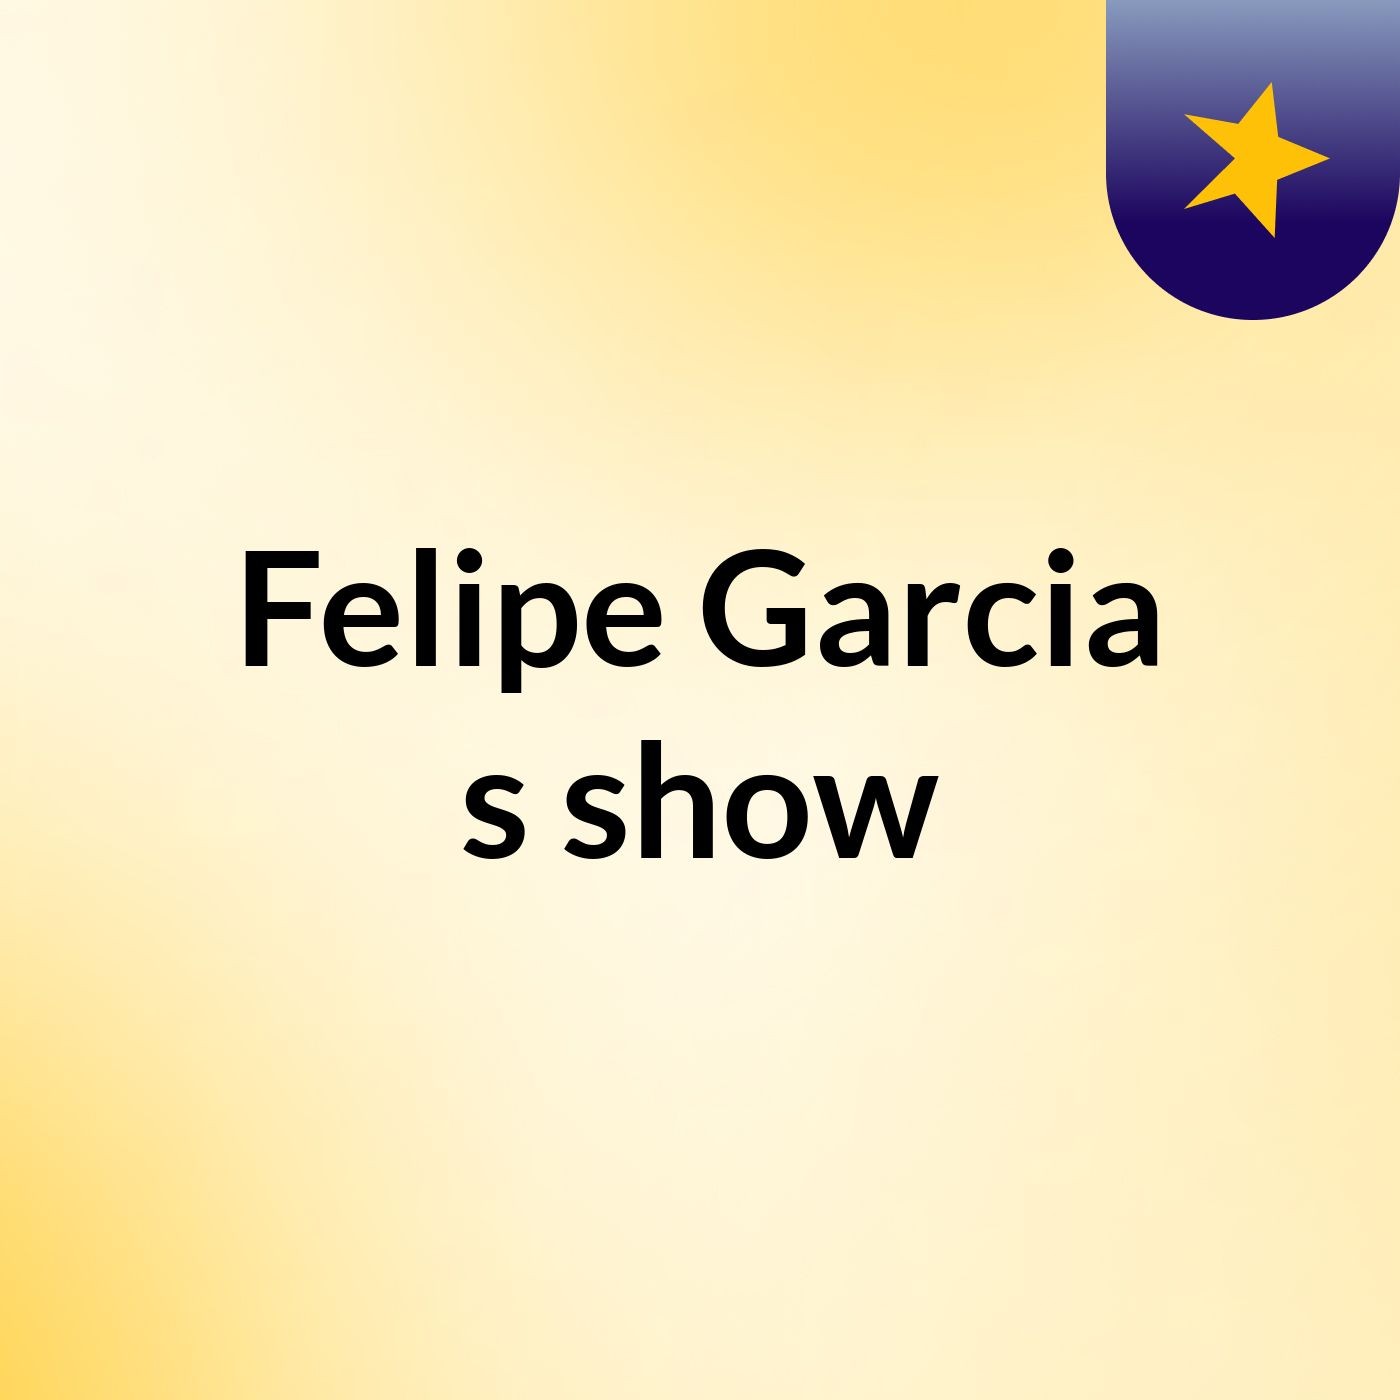 Felipe Garcia's show